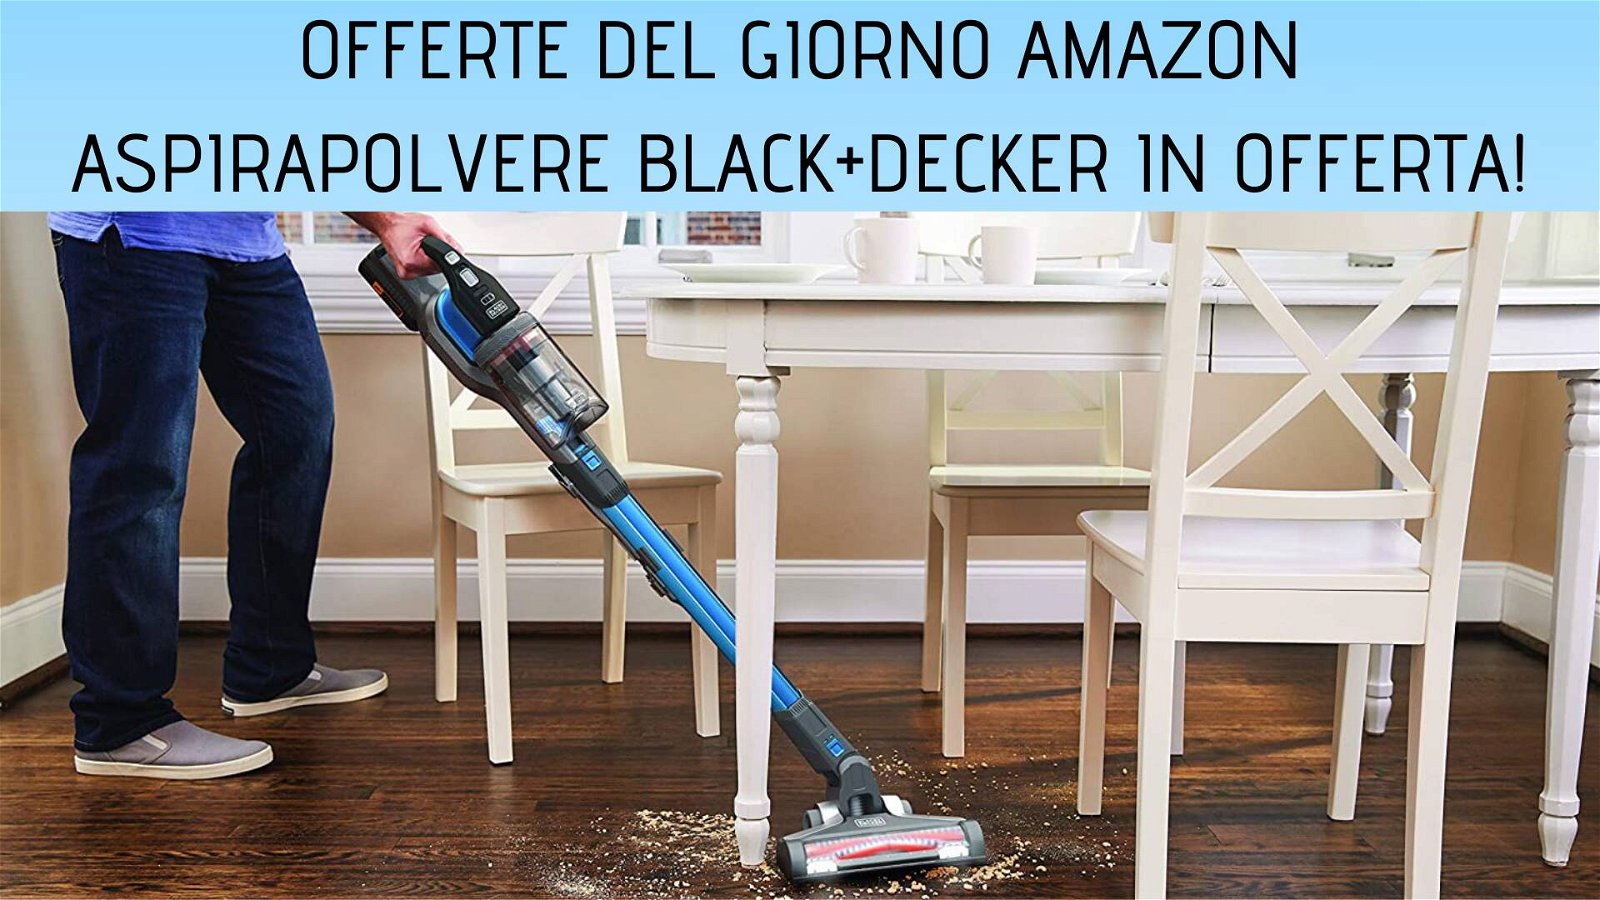 Immagine di Offerte del giorno Amazon: ottimi sconti sugli aspirapolvere Black+Decker!